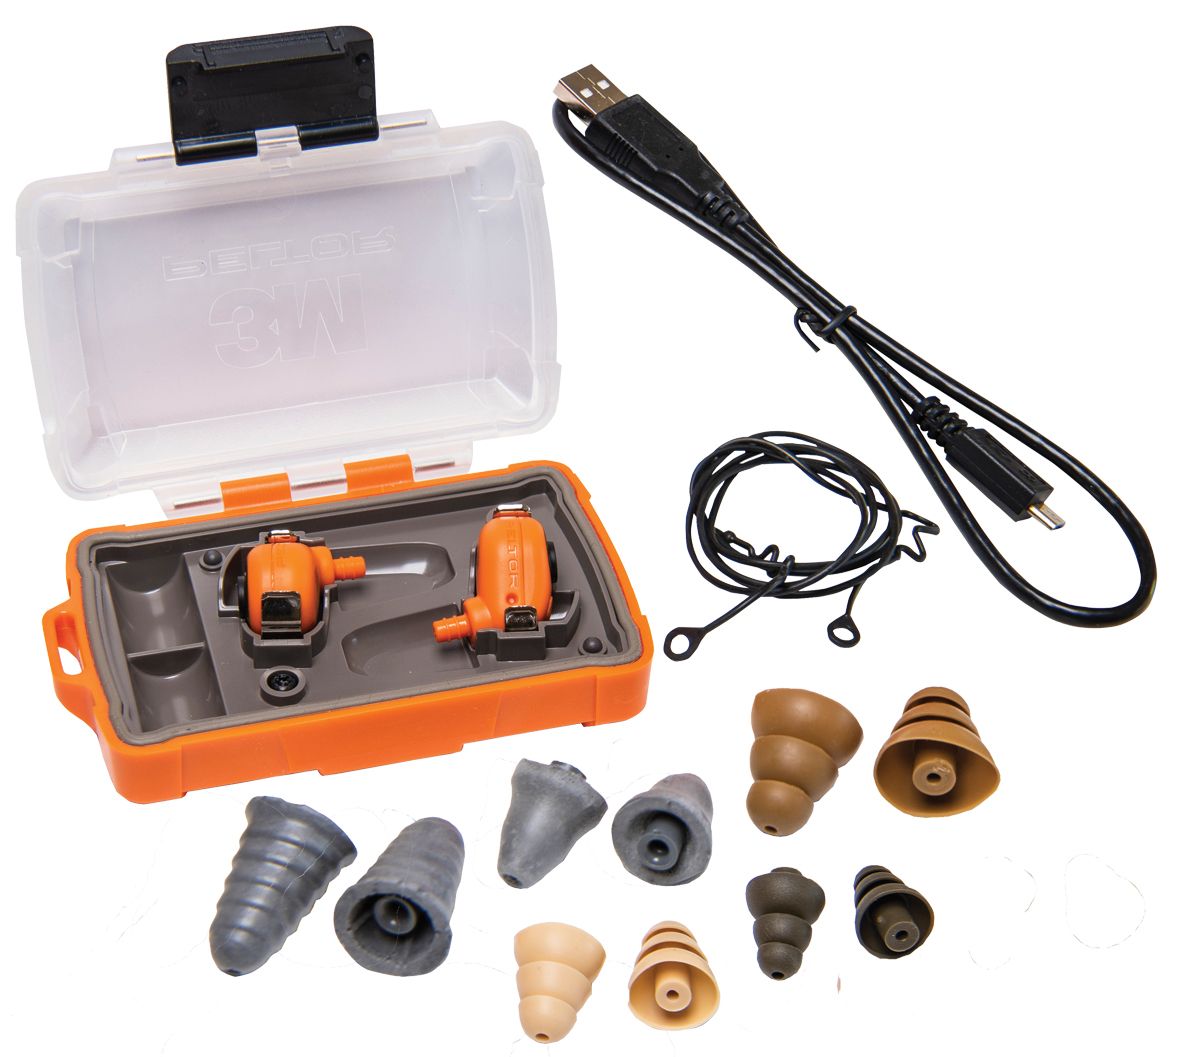 EEP-100 Electronic Ear Plug Kit